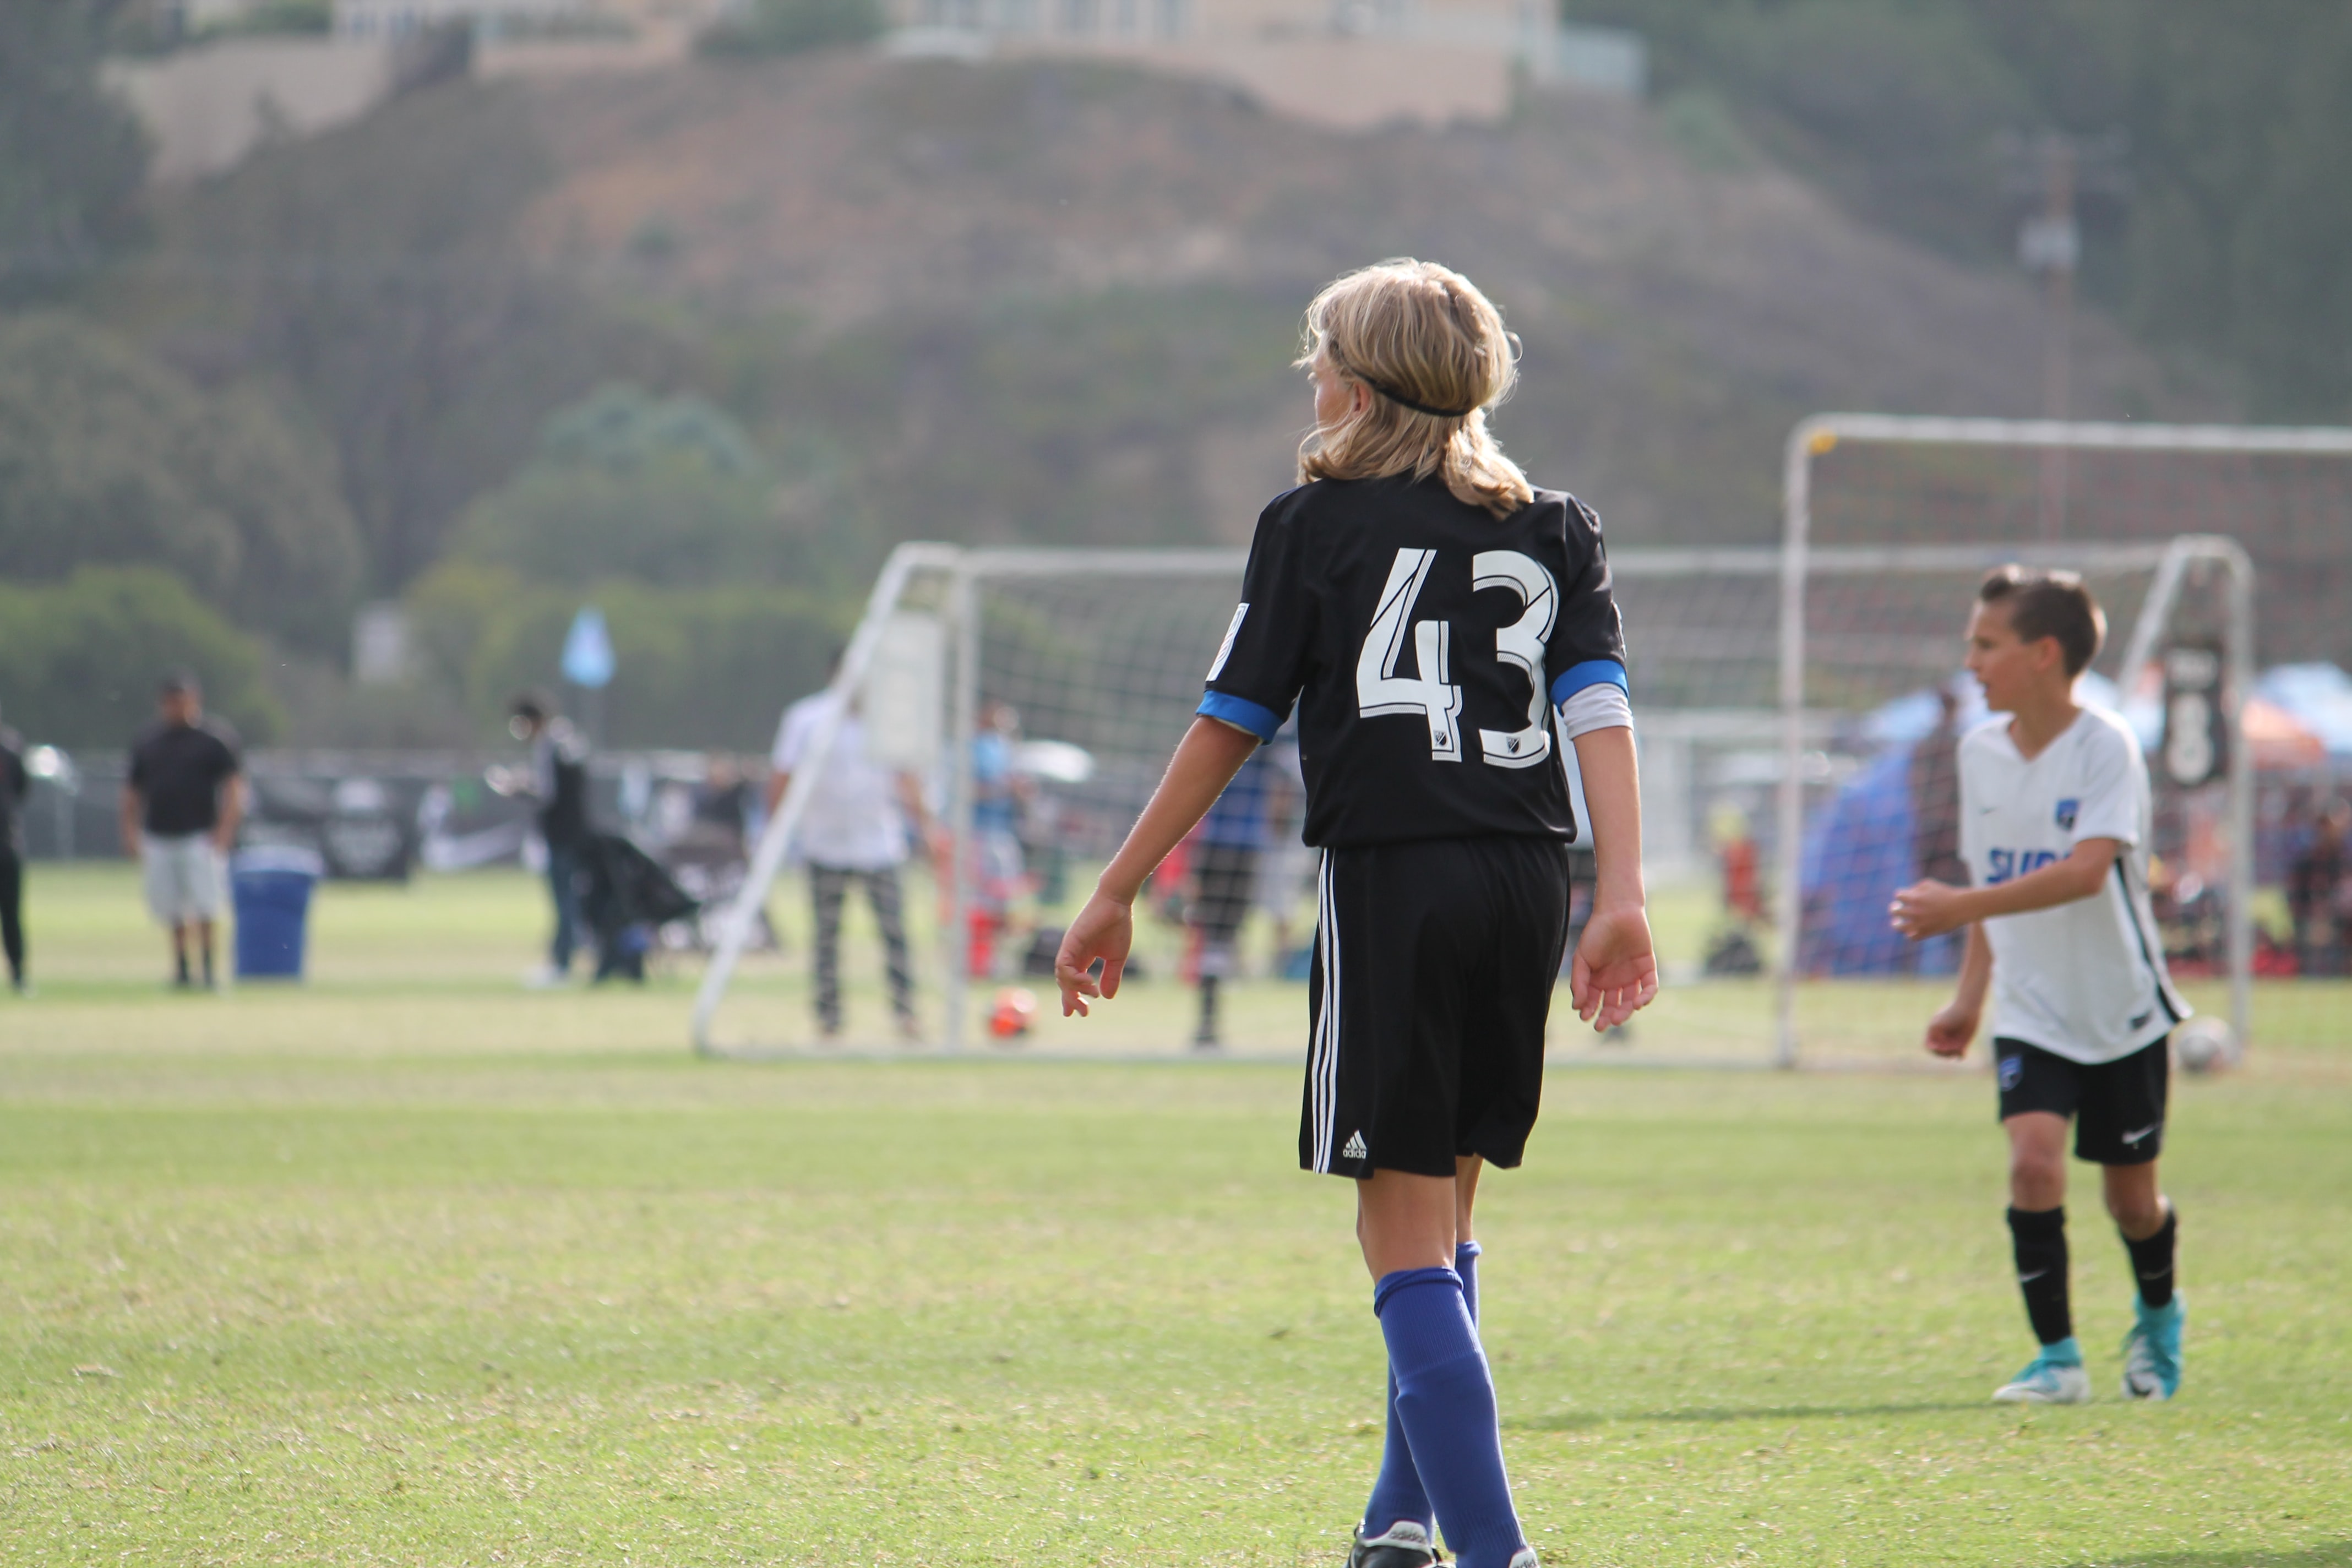 Как развить потенциал ребенка для развития в спорте